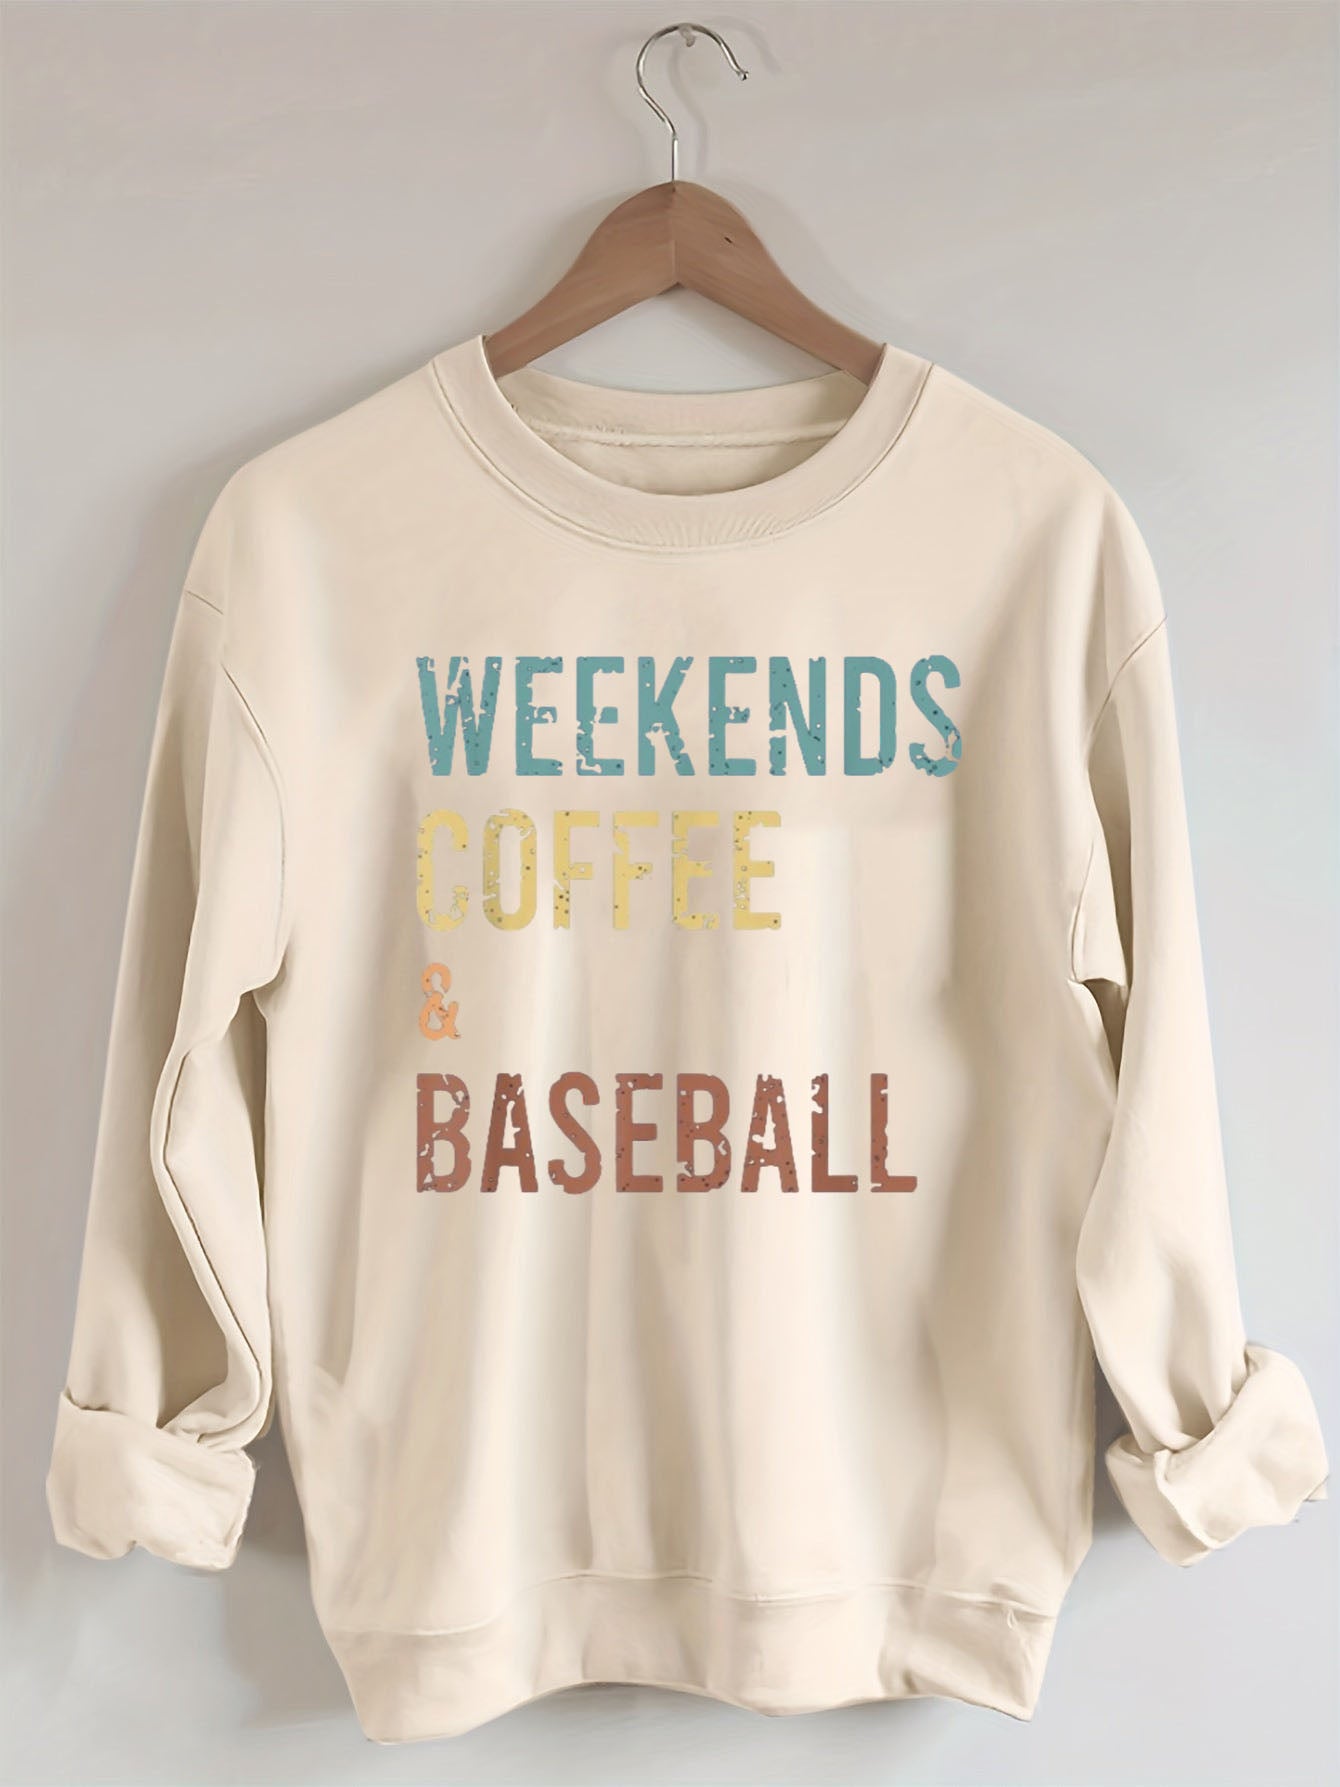 Weekends Coffee and Baseball Sweatshirt